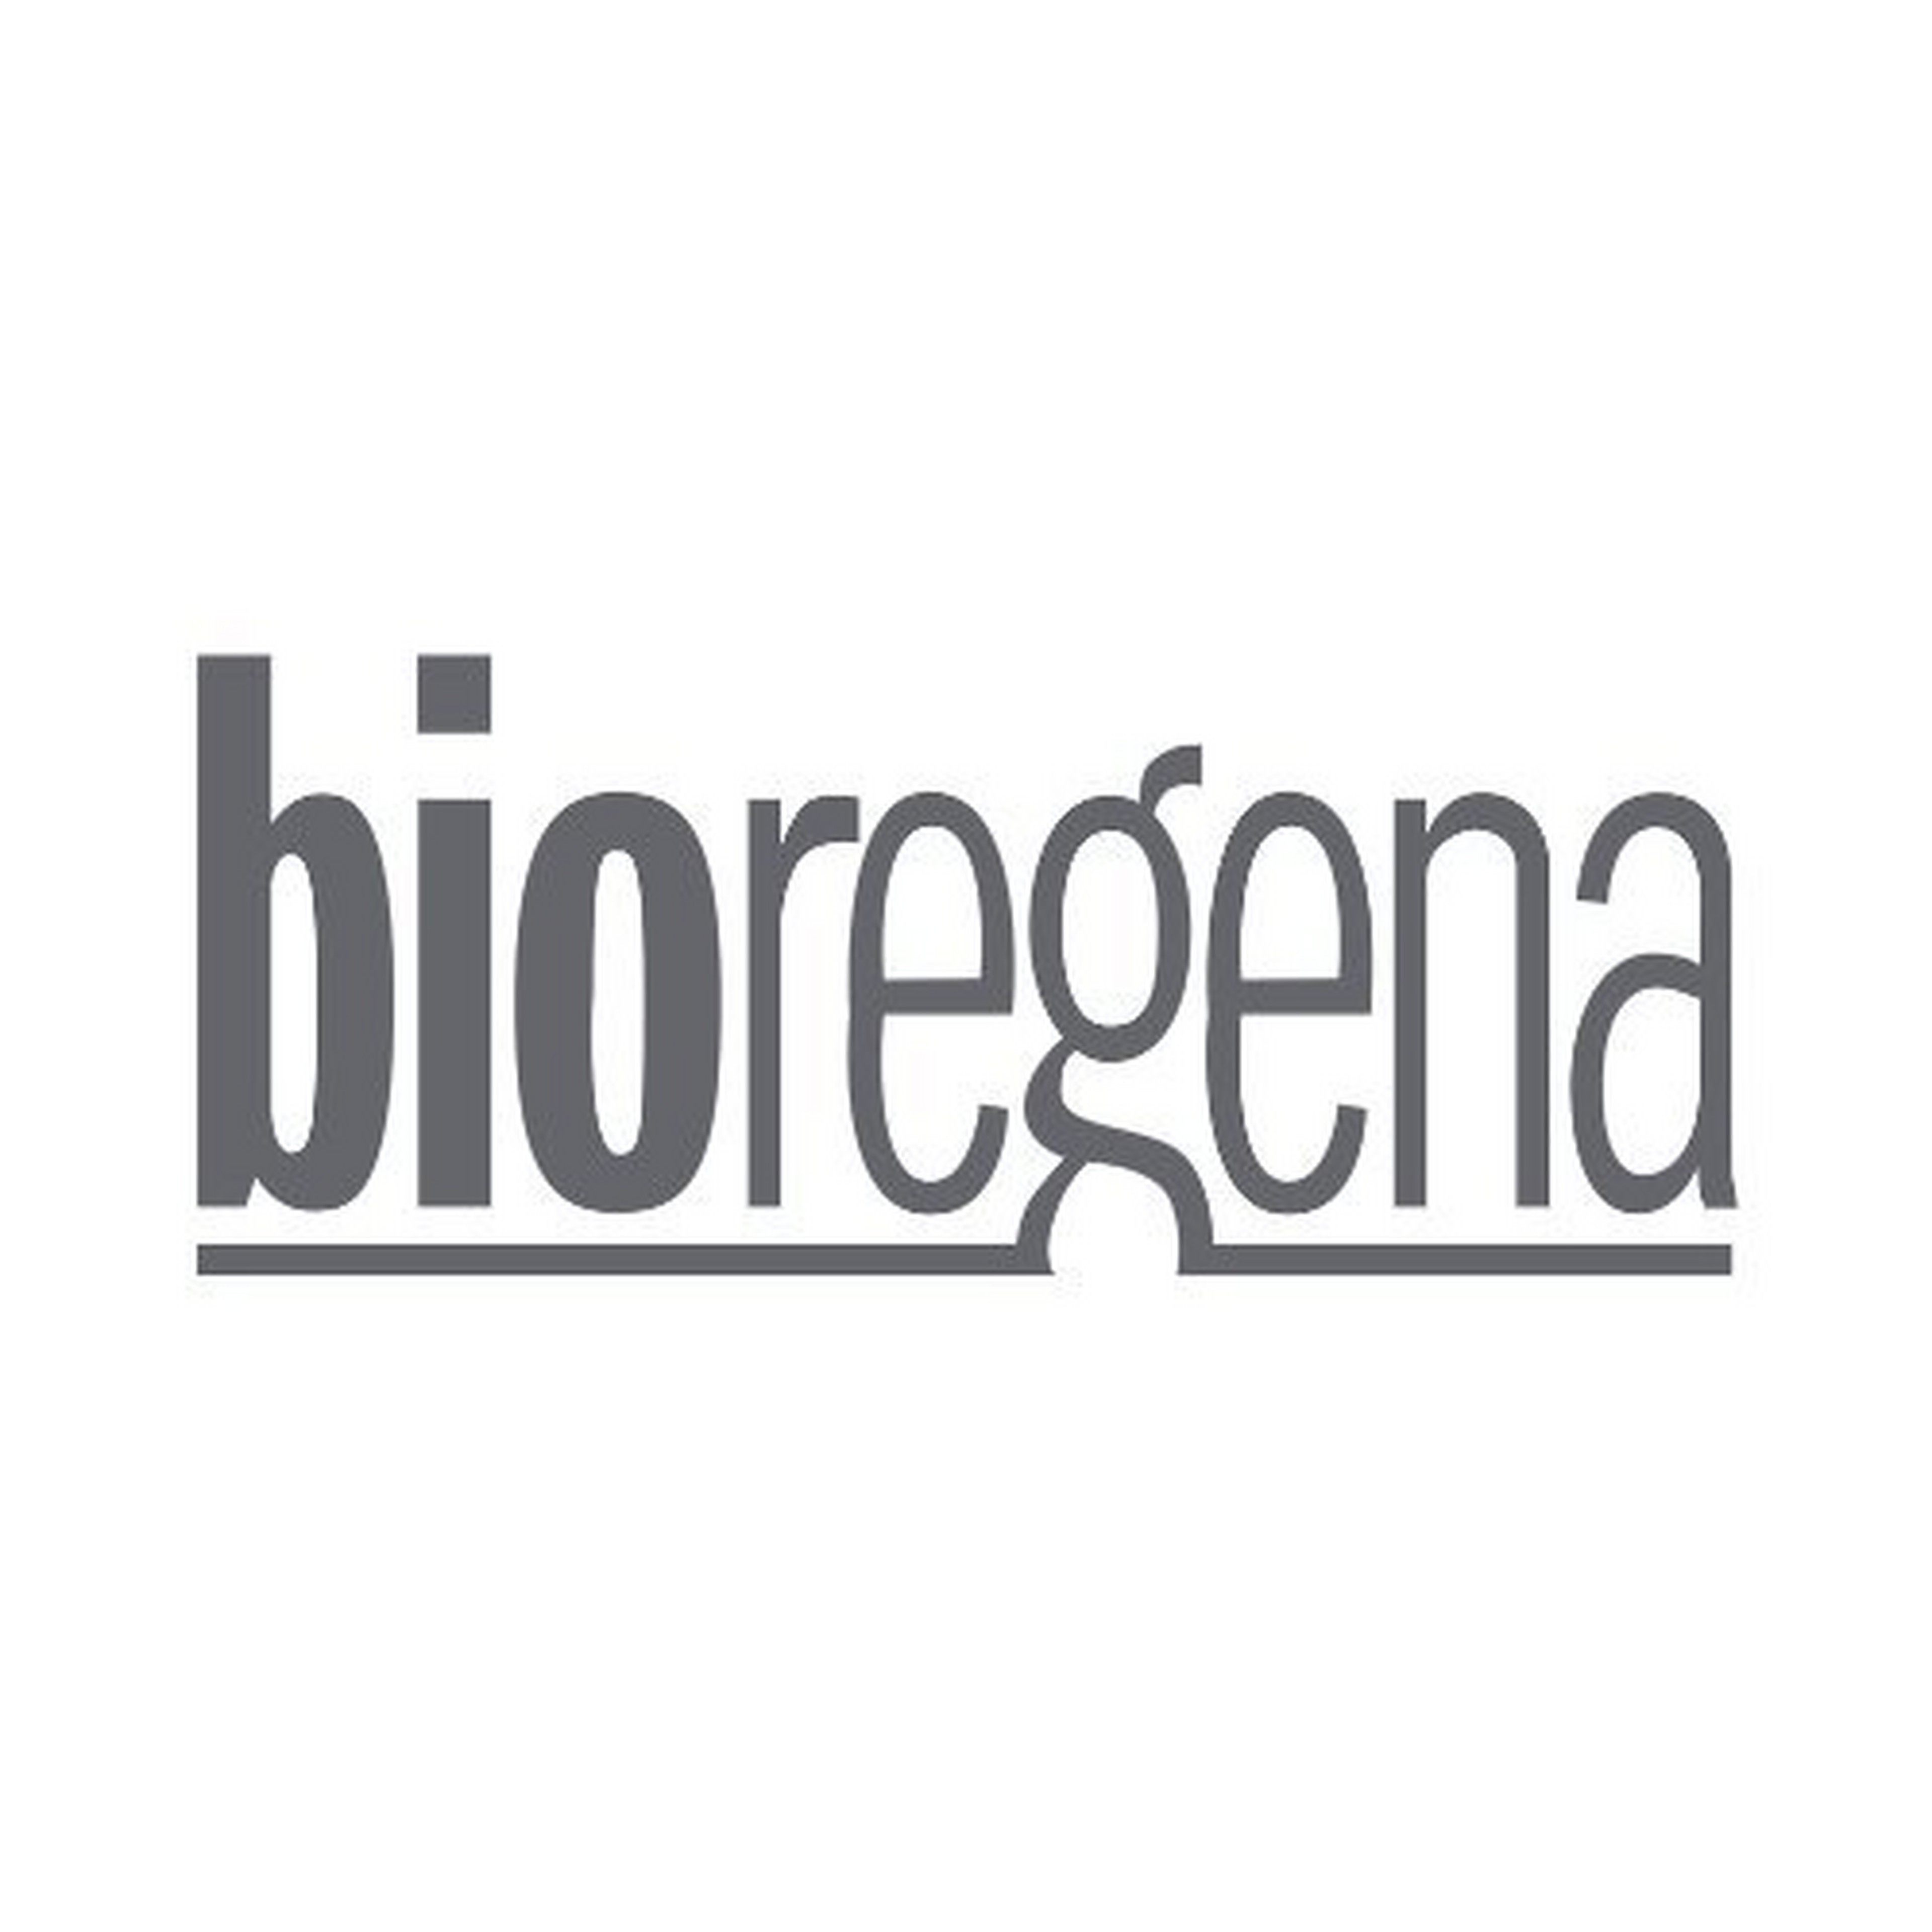 Bioregena logotype